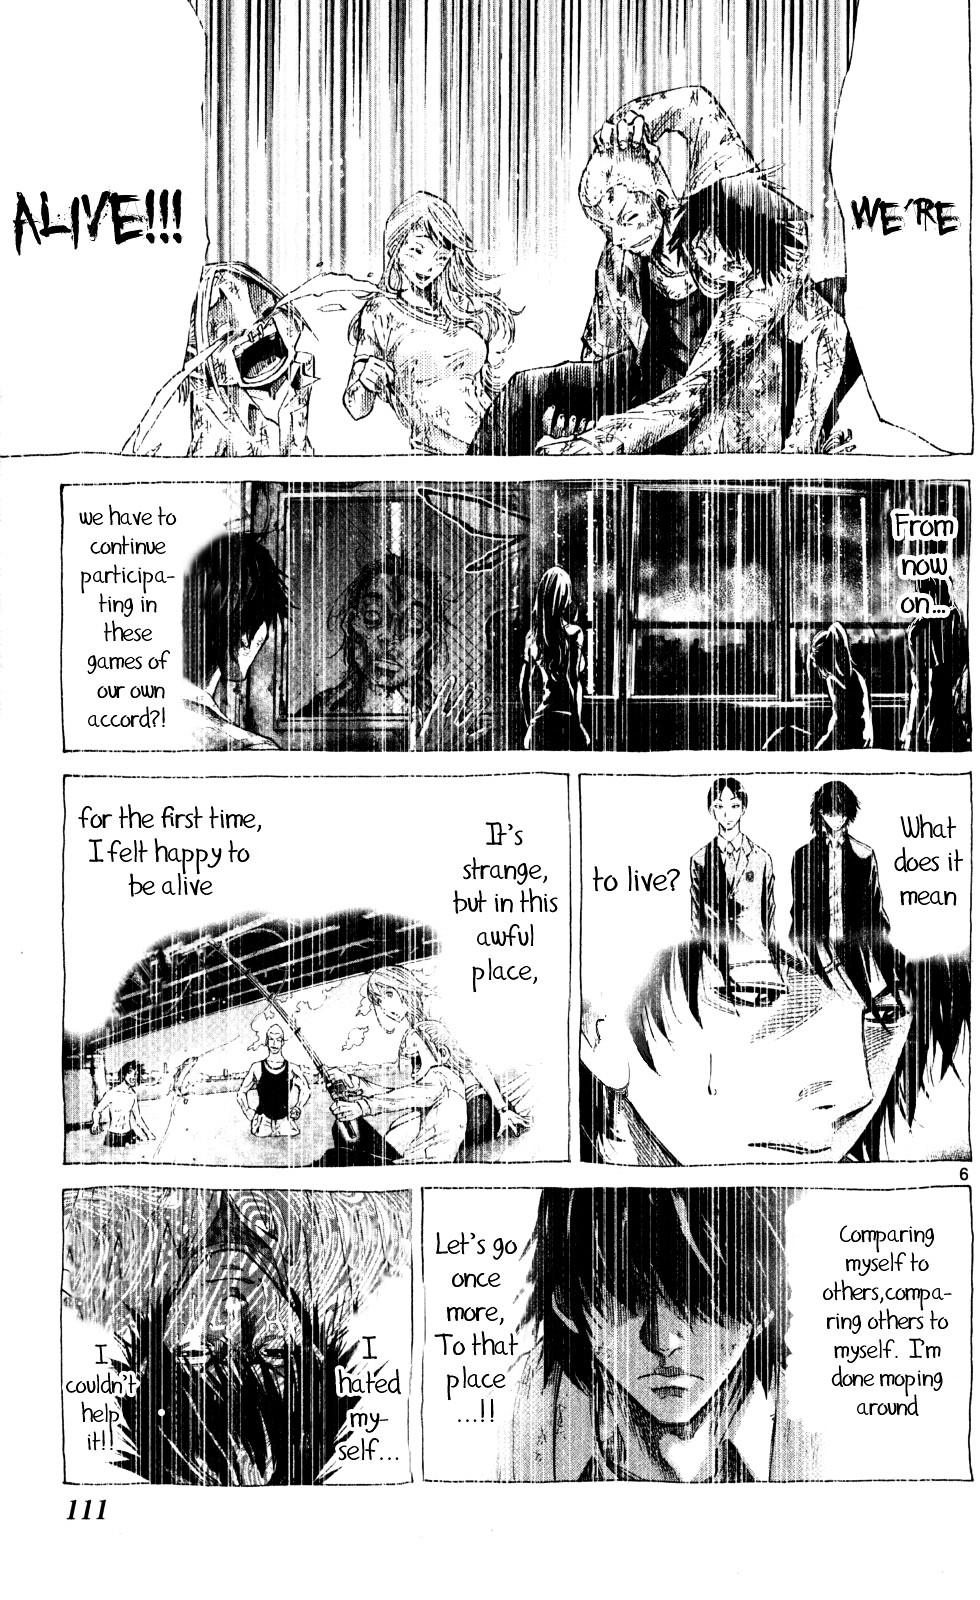 Imawa No Kuni No Alice Vol.16 Chapter 53 : Seventh Day Of Exhibitions (1) page 5 - Mangakakalot